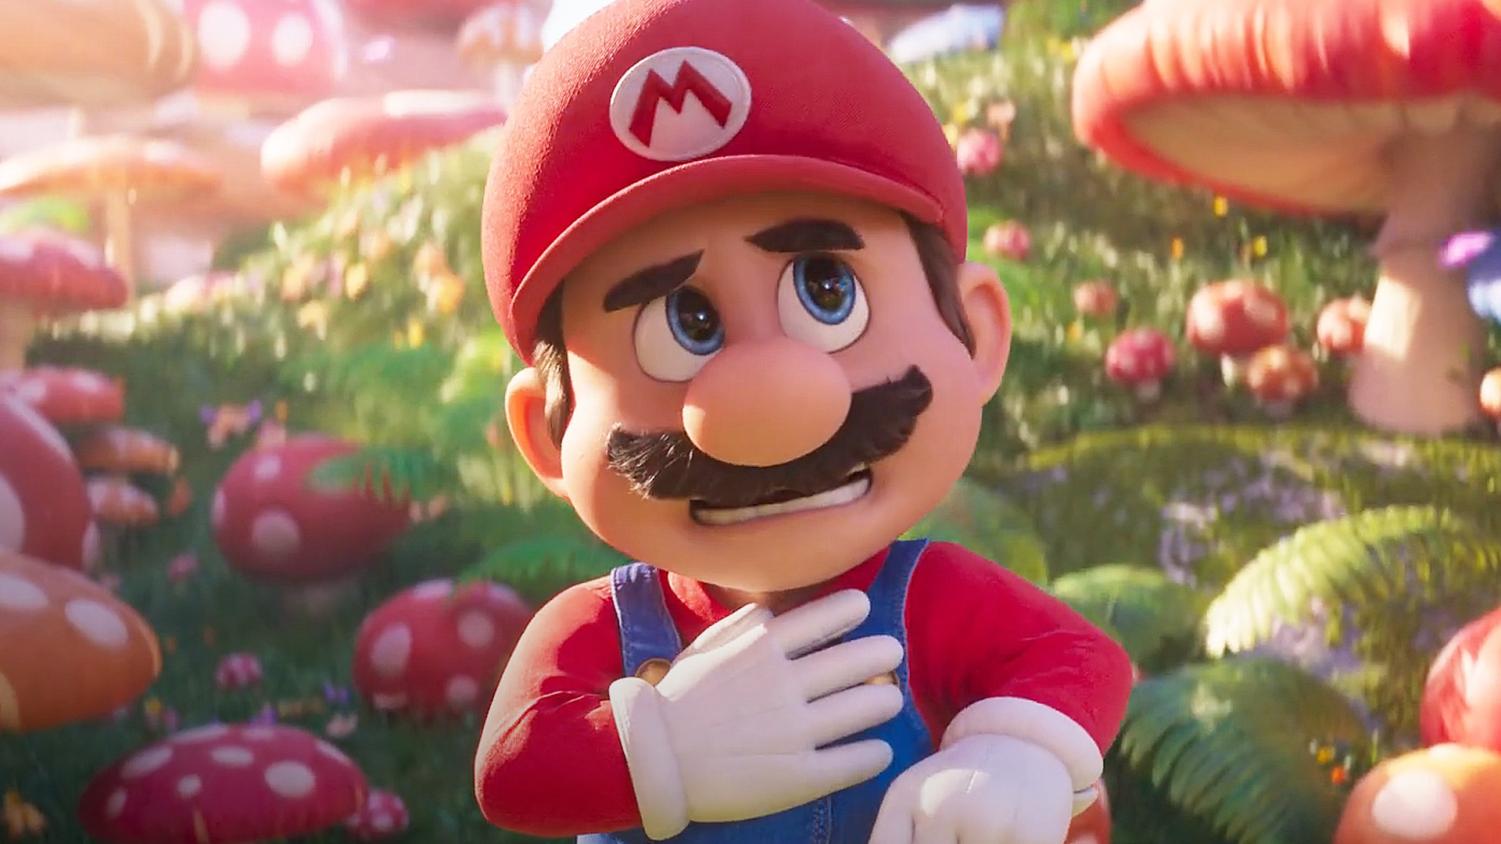 Super Mario Bros. le film de Aaron Horvath (2023), synopsis